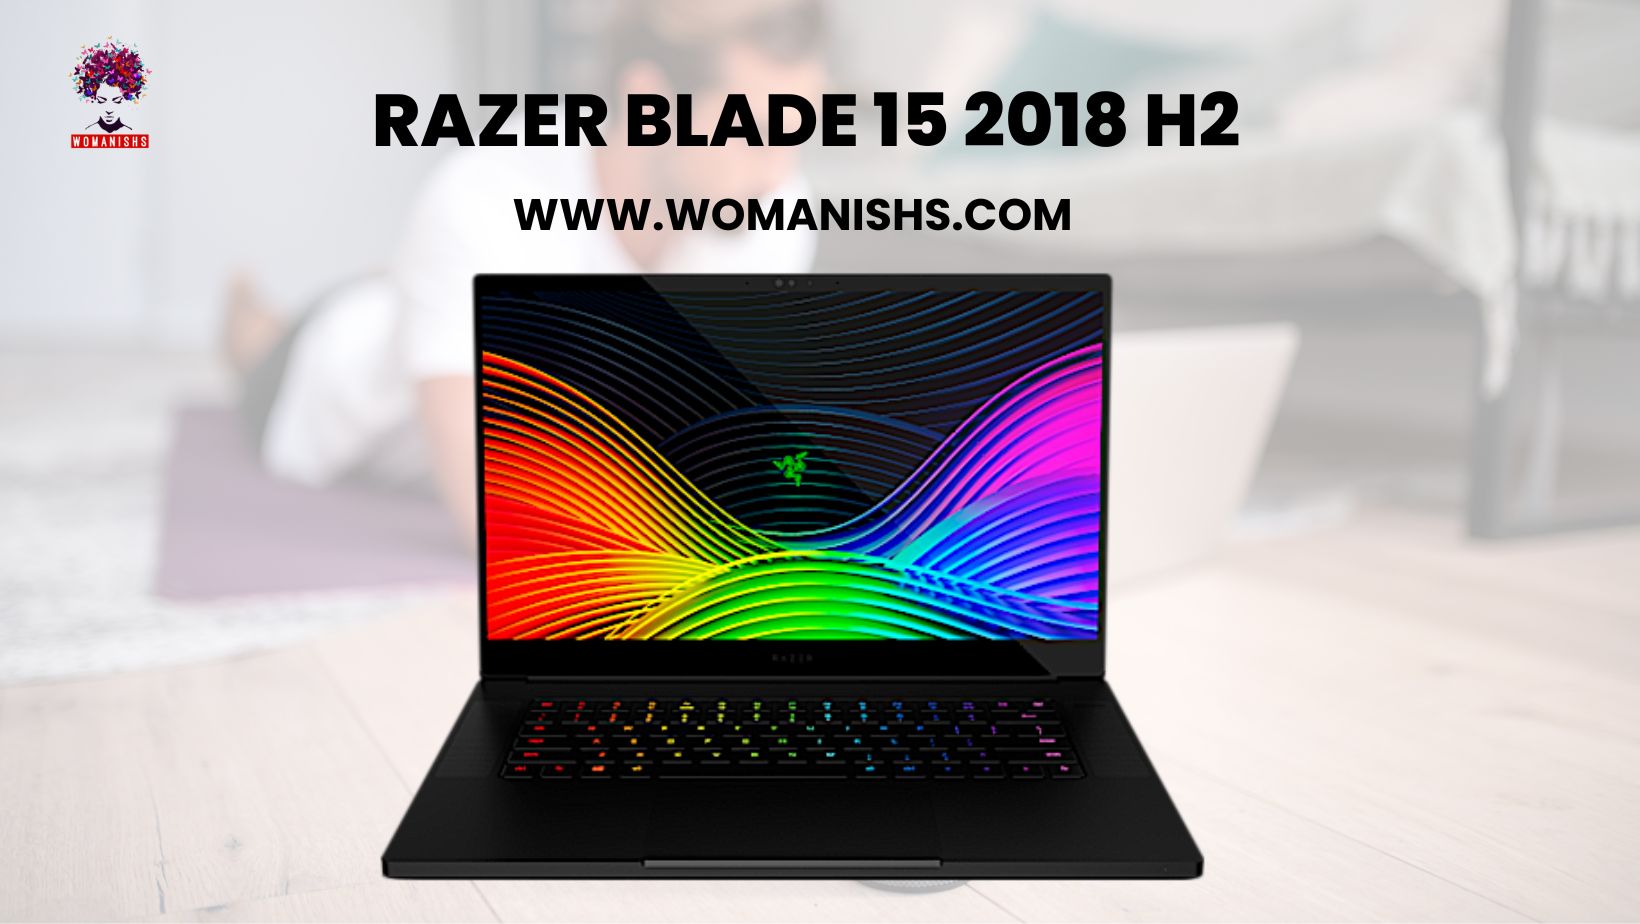 Razer Blade 15 2018 H2 Details about Gaming Laptop